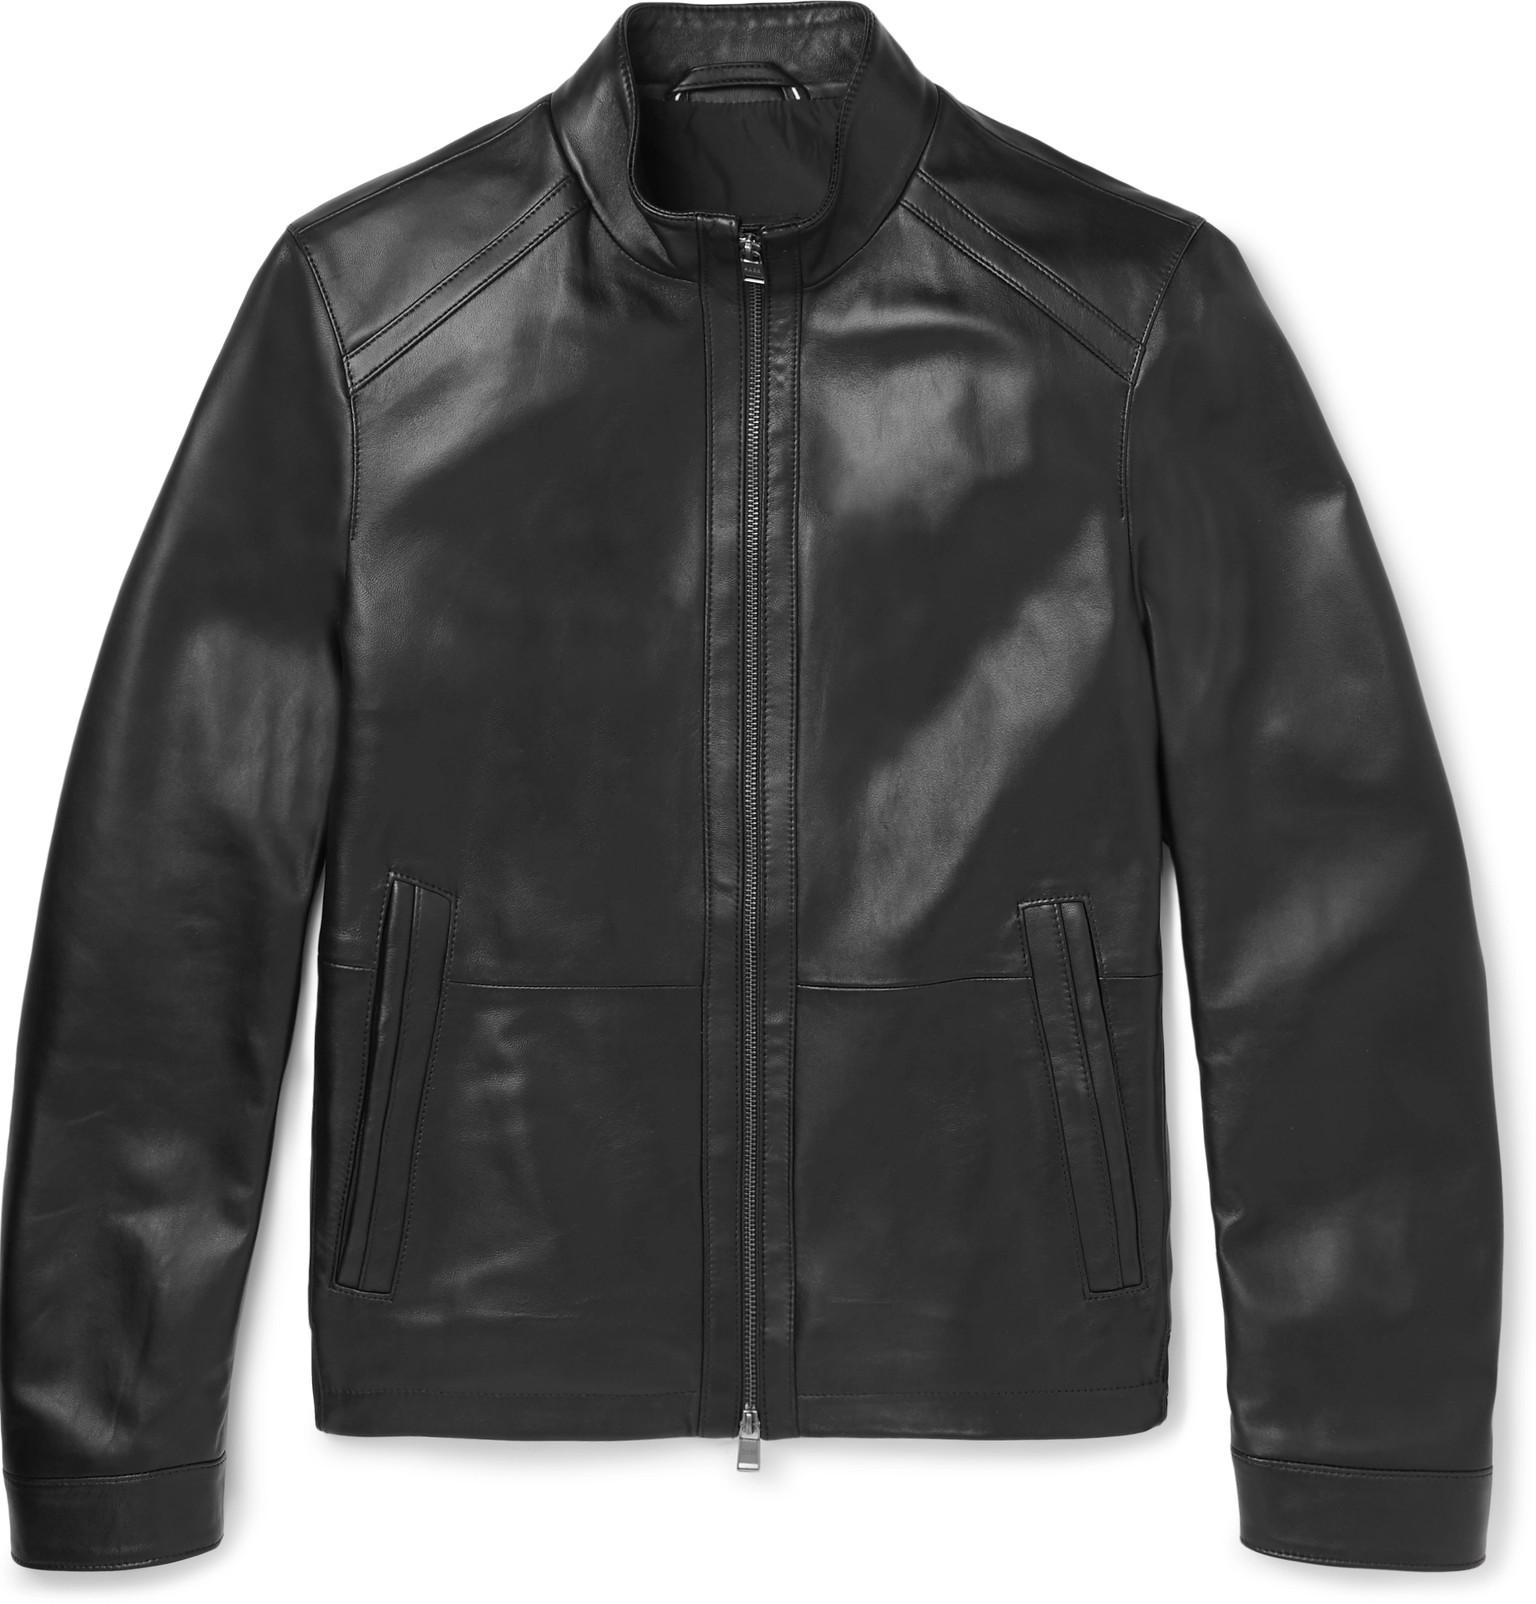 BOSS by Hugo Boss Nestal Leather Jacket in Black for Men - Lyst